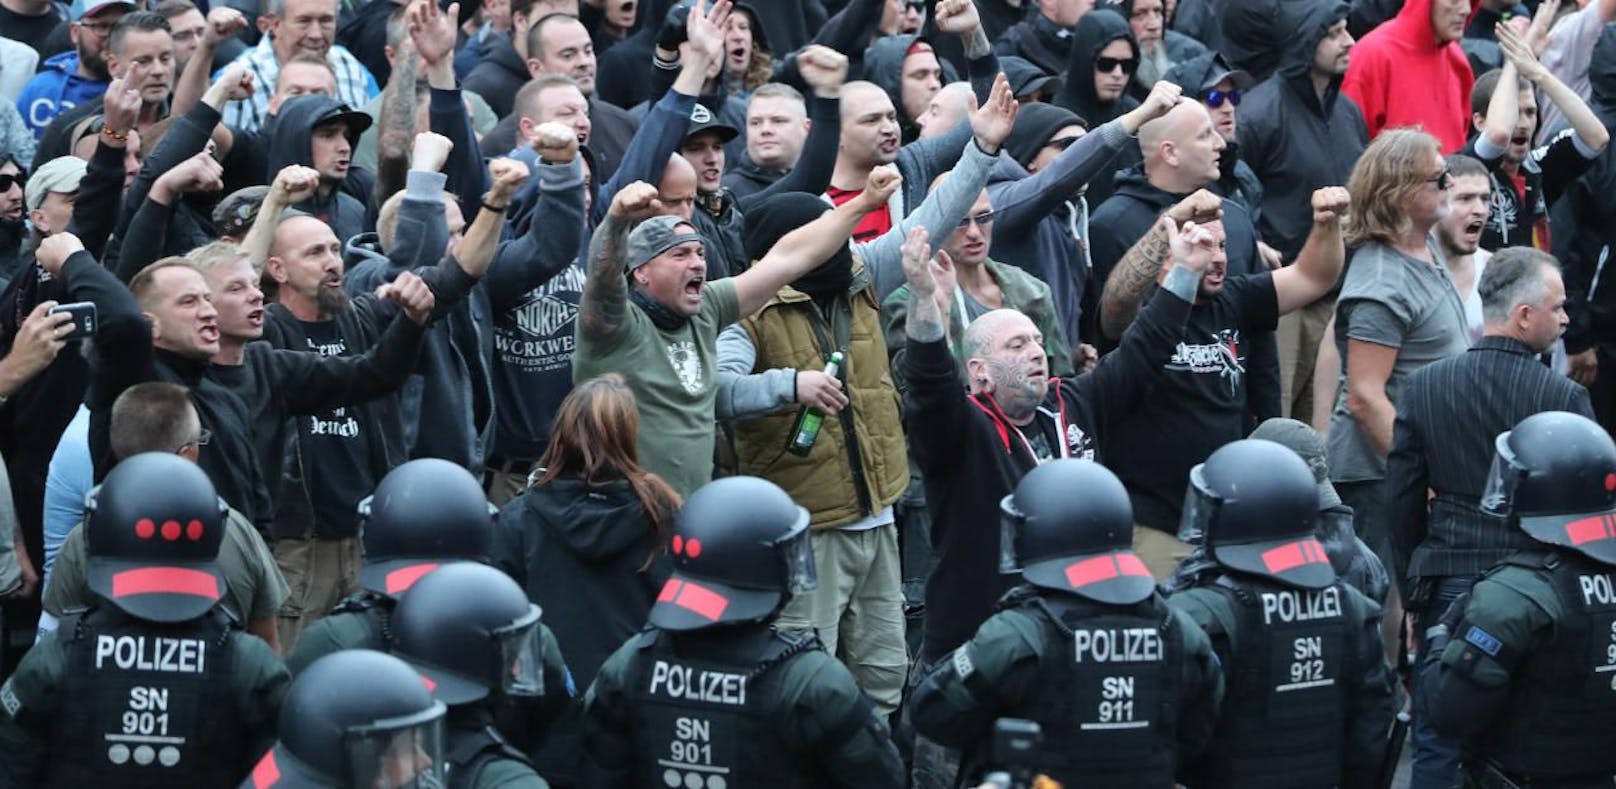 Rechtsextreme und Neonazis bei einer Kundgebung in Chemnitz am. Nach dem Tod eines jungen Mannes bei einer Messerstecherei waren Tausende Rechtsextreme und Neonazis aufmarschiert. Es ist nur einer vieler Fälle, die für Beunruhigung durch die rechtsextreme Szene sorgen. 